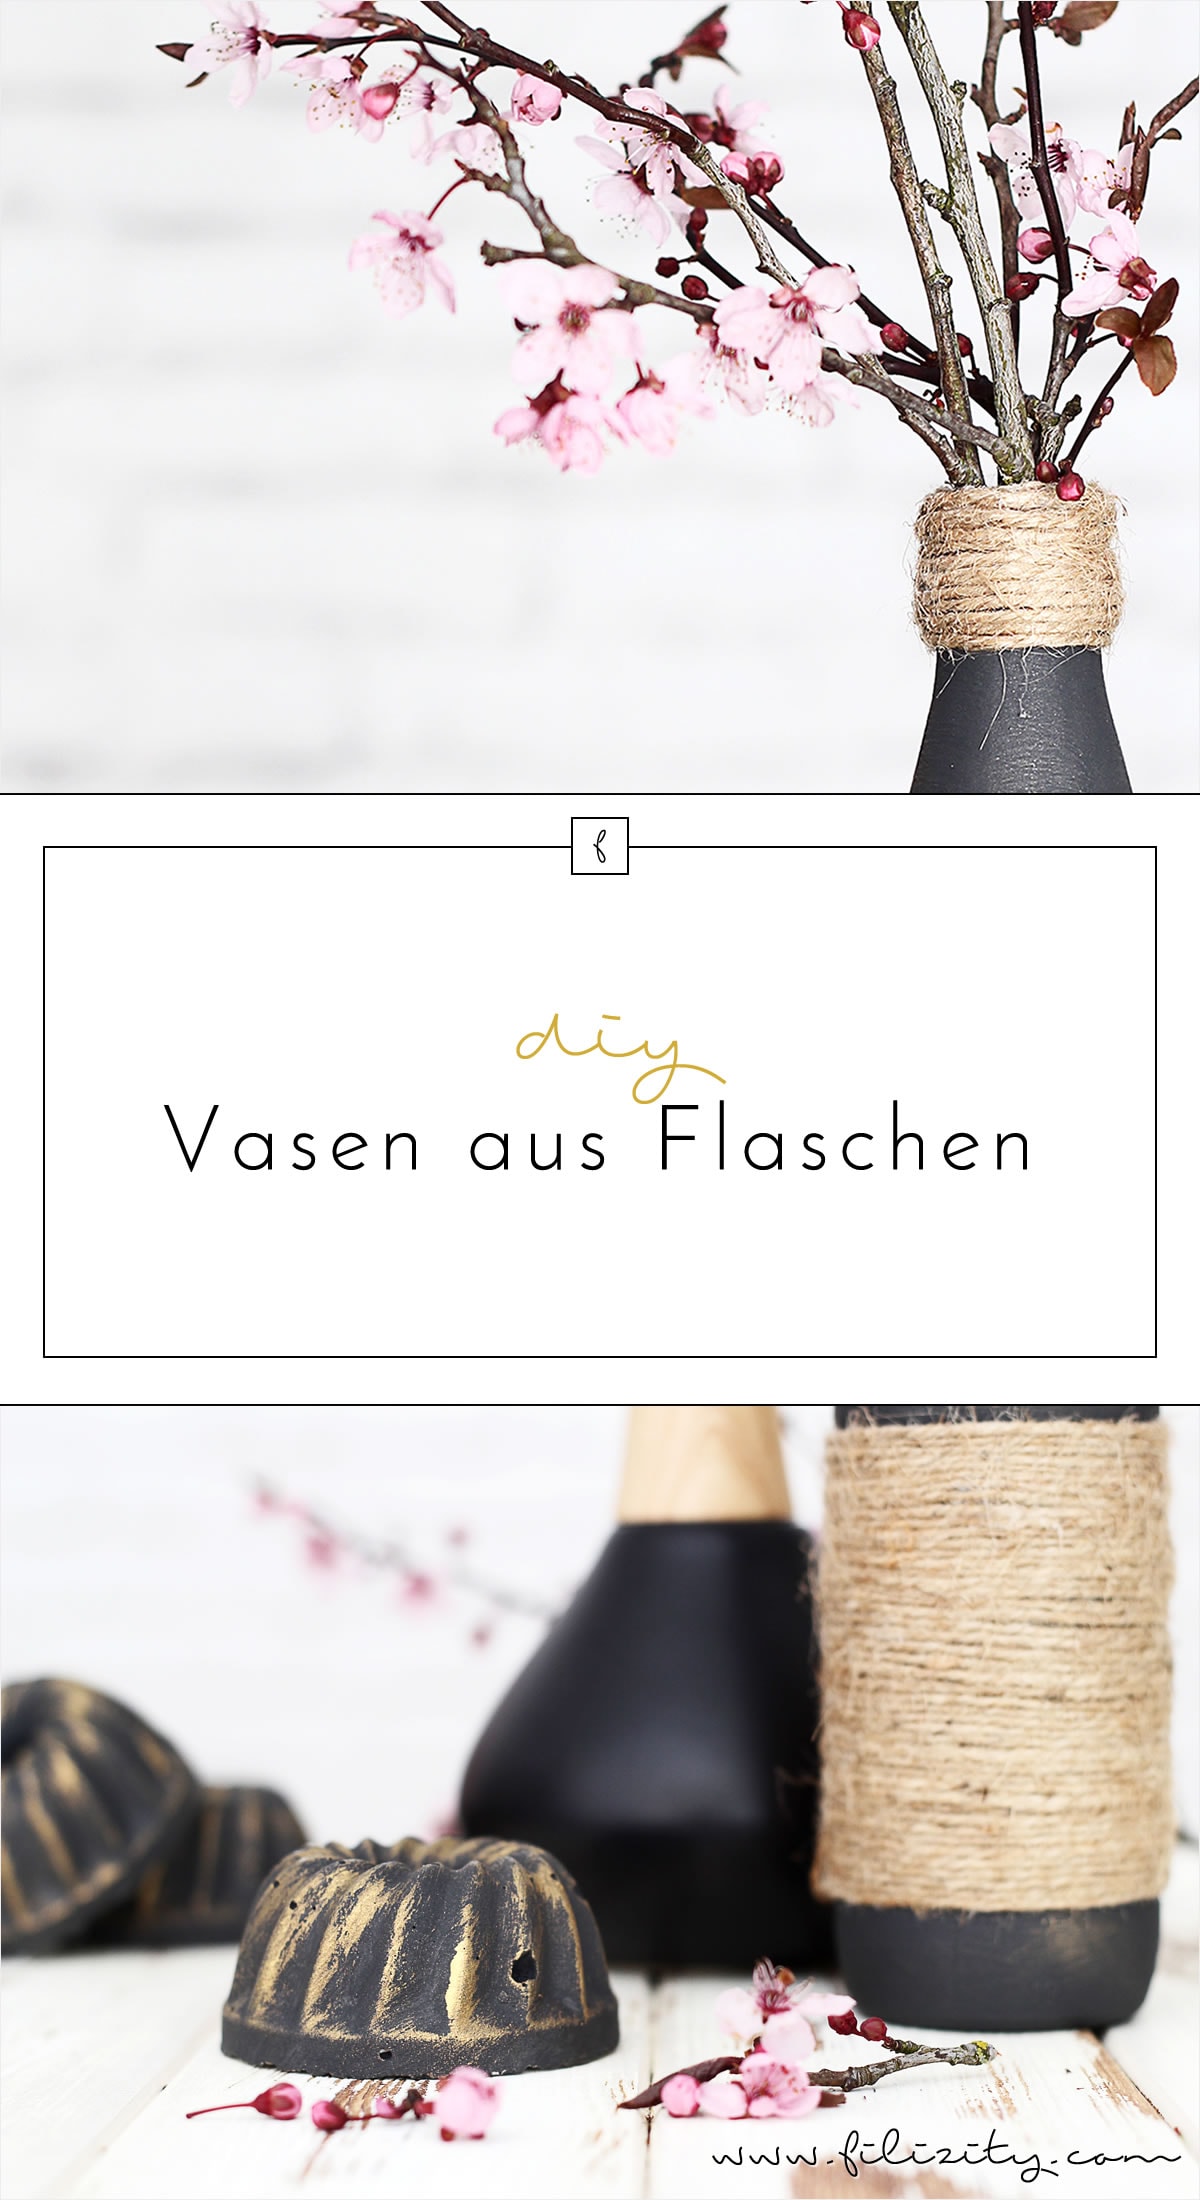 Edle Deko günstig selber machen: Jute-Vasen aus Flaschen | Upcycling DIY Dekoidee von Filizity.com | Interior- & DIY-Blog aus dem Rheinland #upcycling